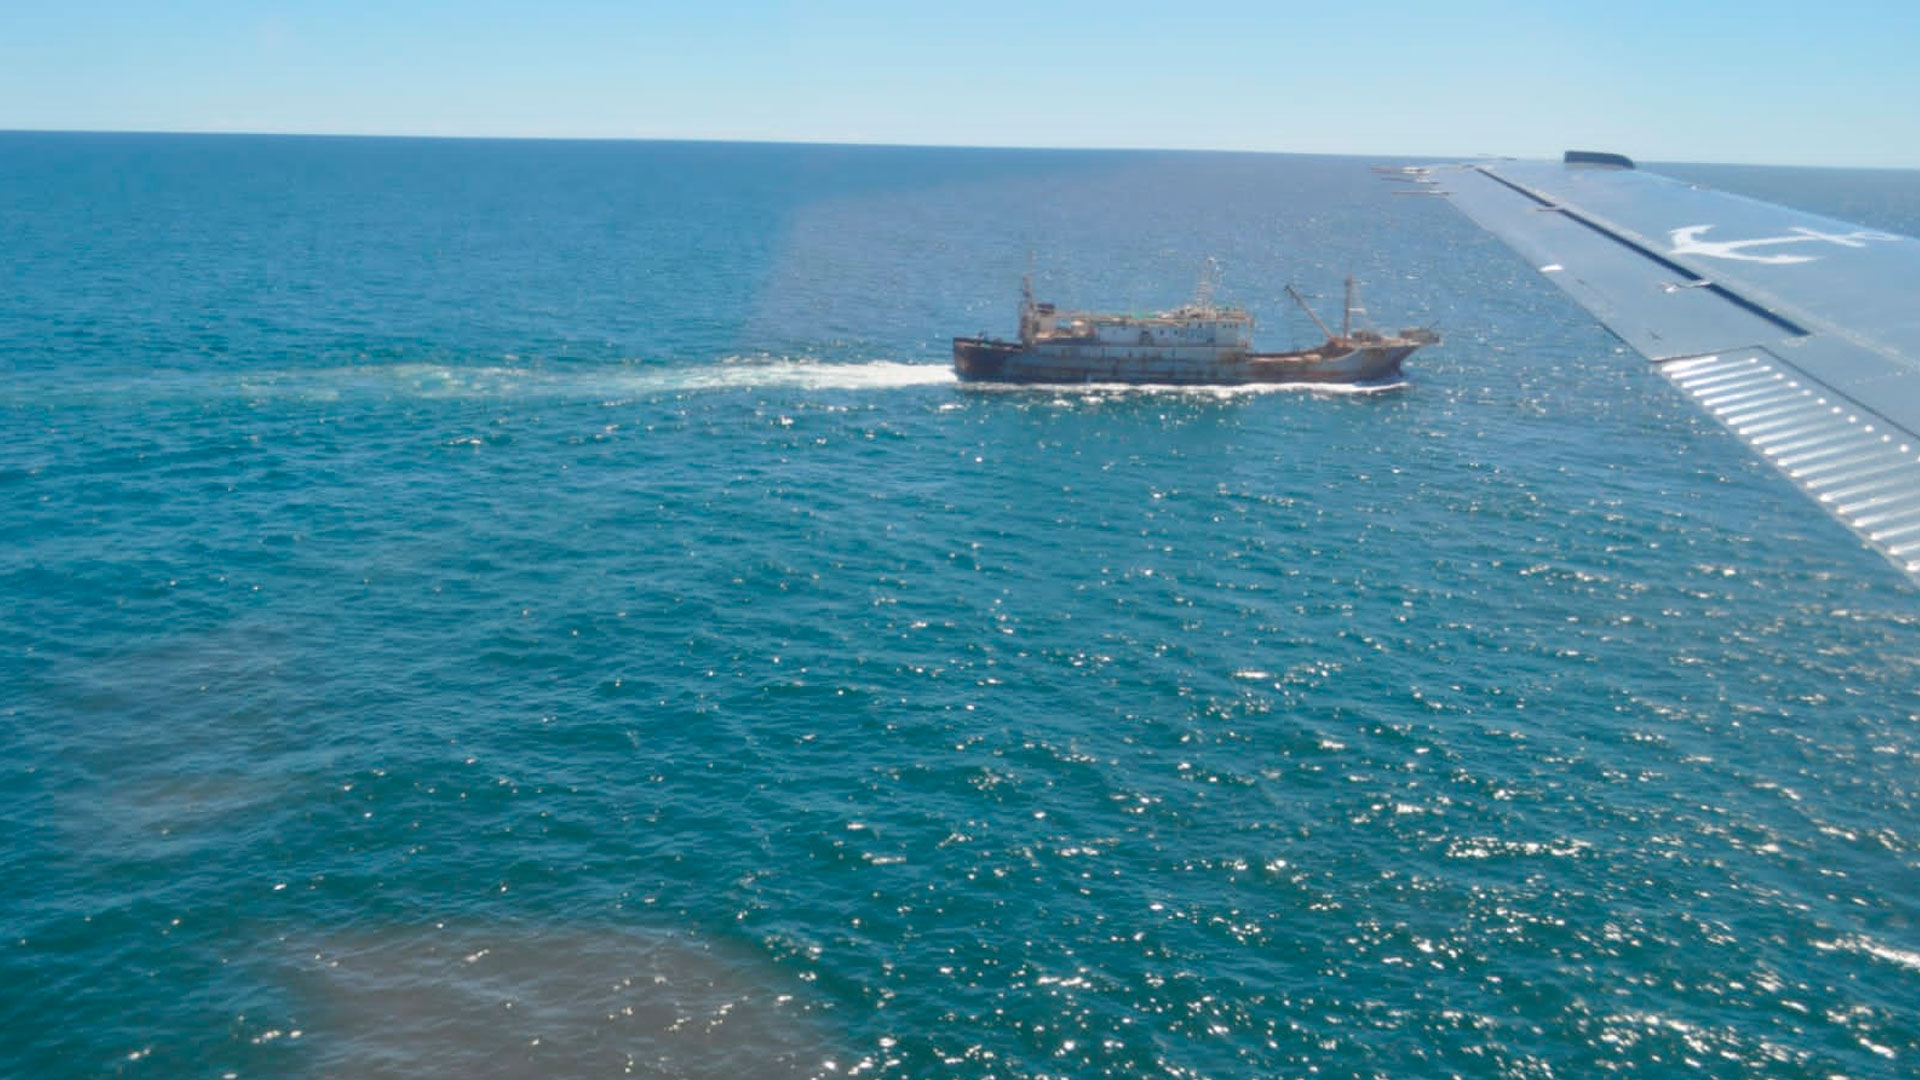 La Armada Argentina lleva contabilizados más de 100 pesqueros chinos ingresando a aguas argentinas, se estima que el total de las naves en tránsito se acerca a las 350